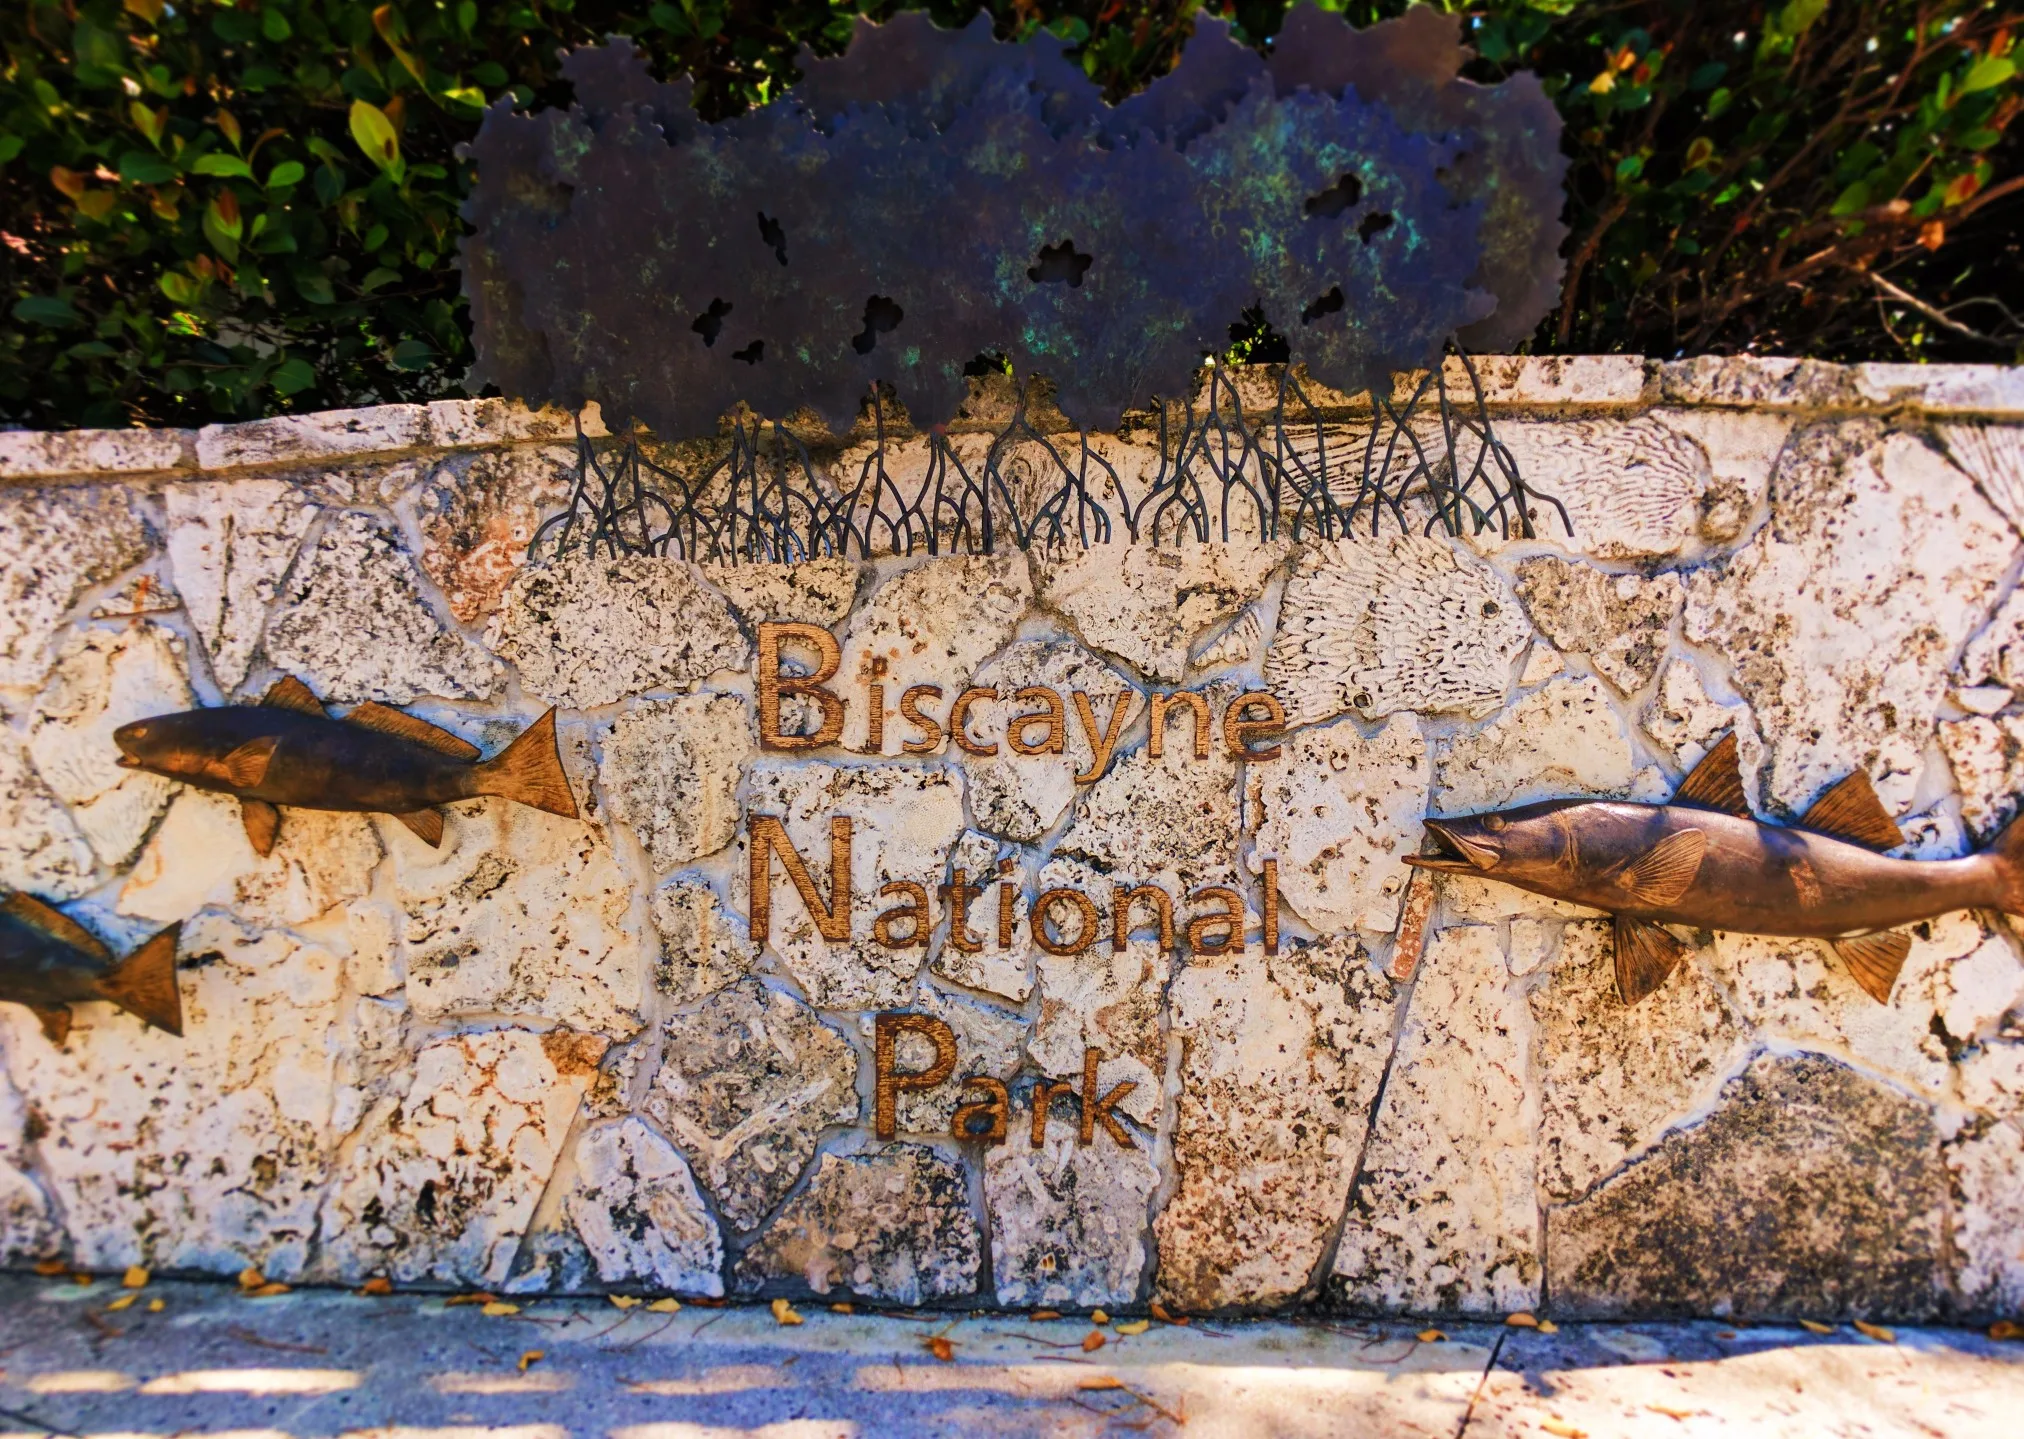 Entrance sign at Biscayne National Park 1